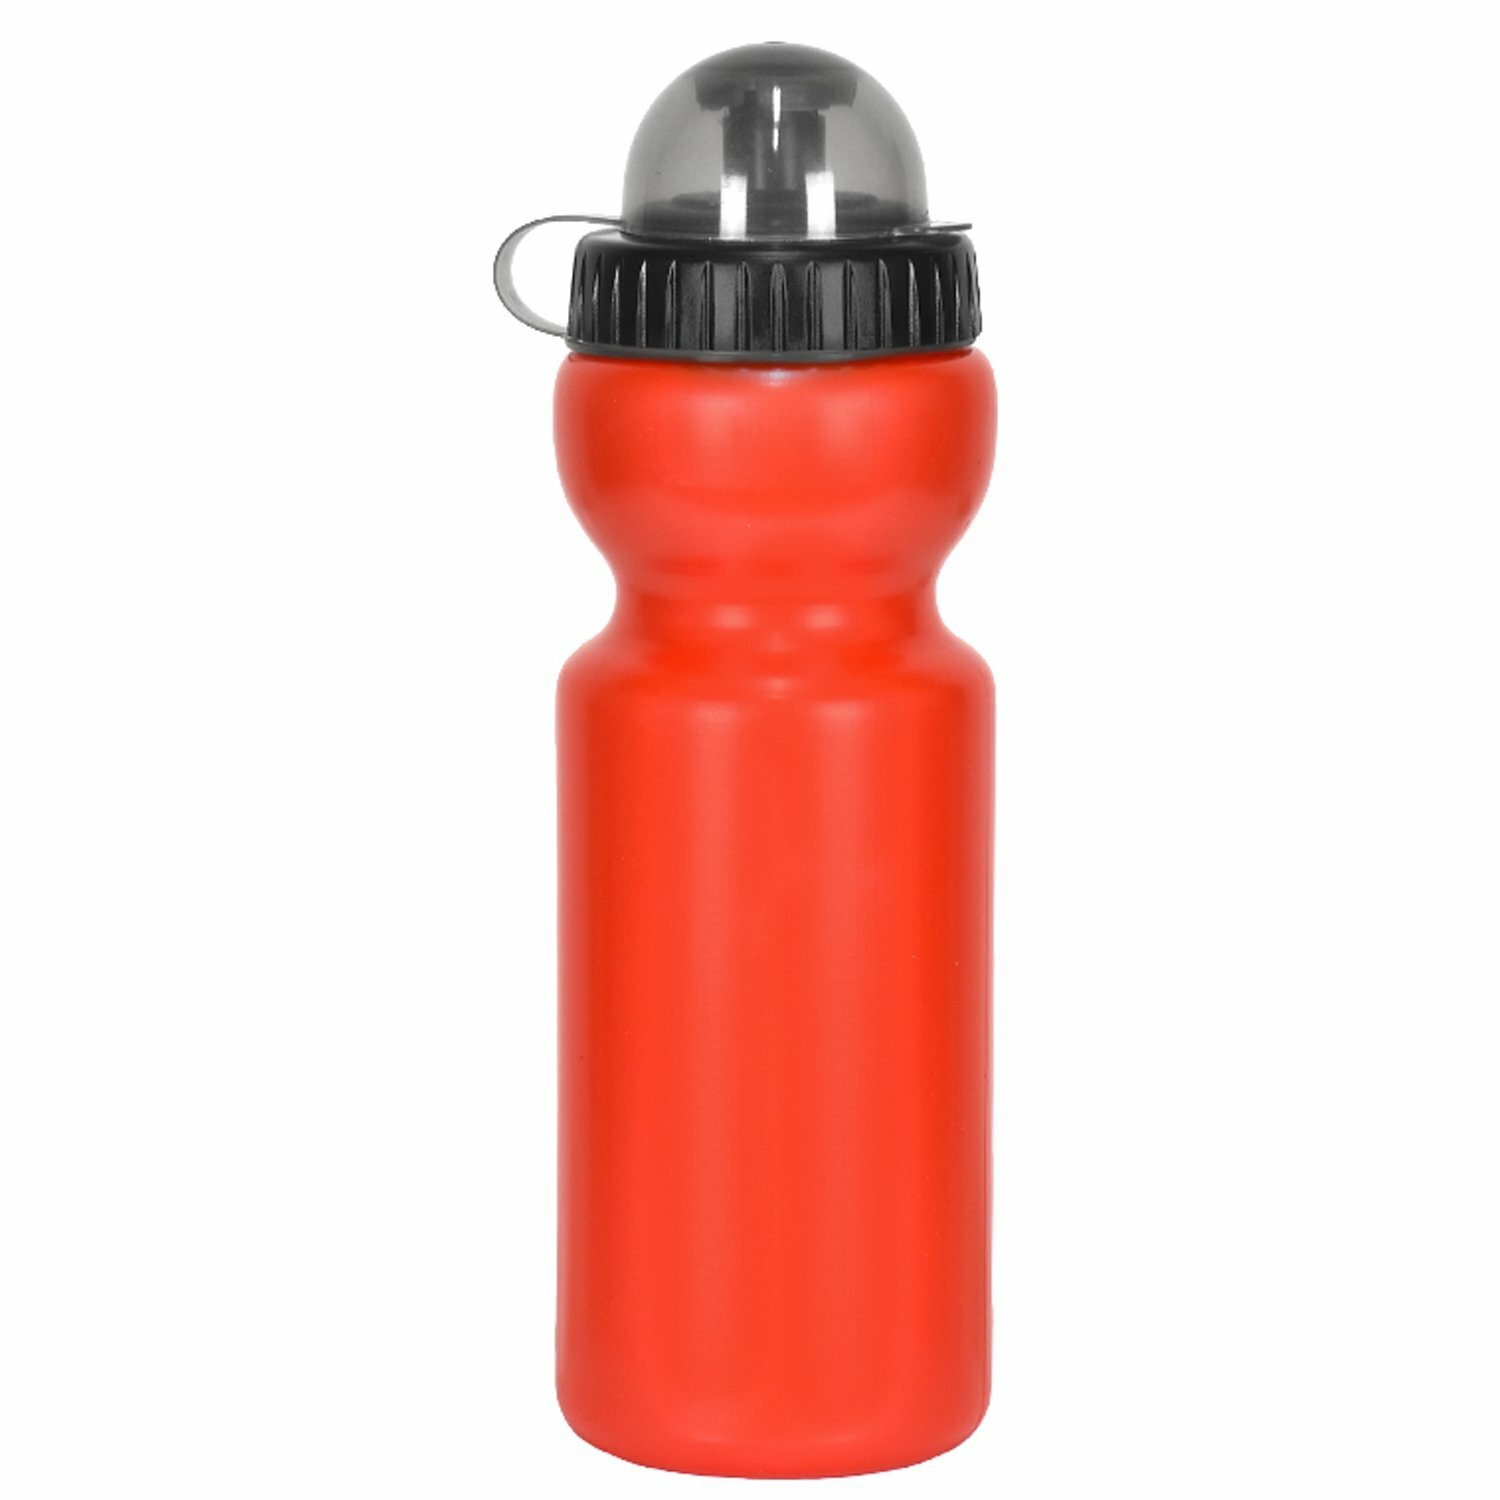 V-grip Фляга CWB-700G,750мл, пластик, с клапаном и защитным колпачком, красная